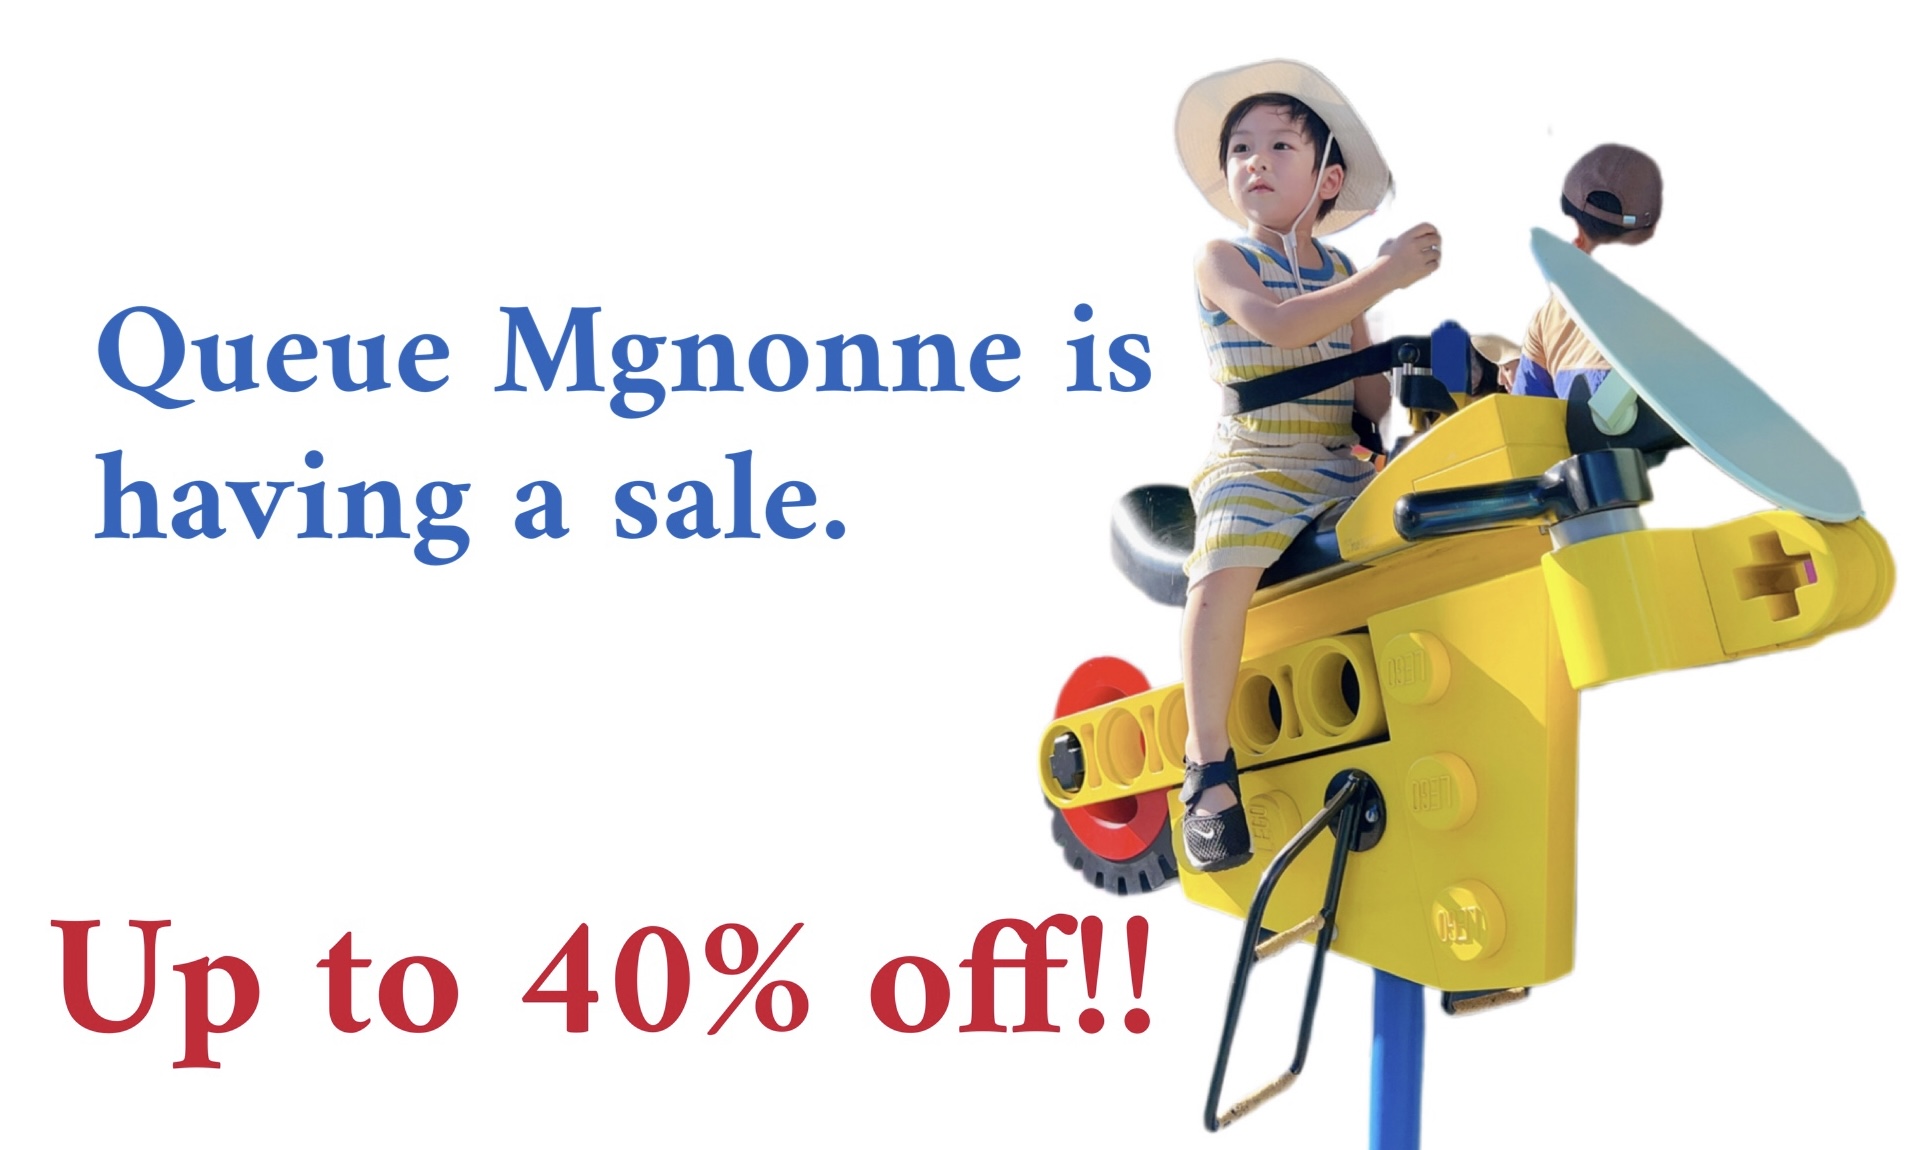 Queue Mgnonne is having a Sale!!